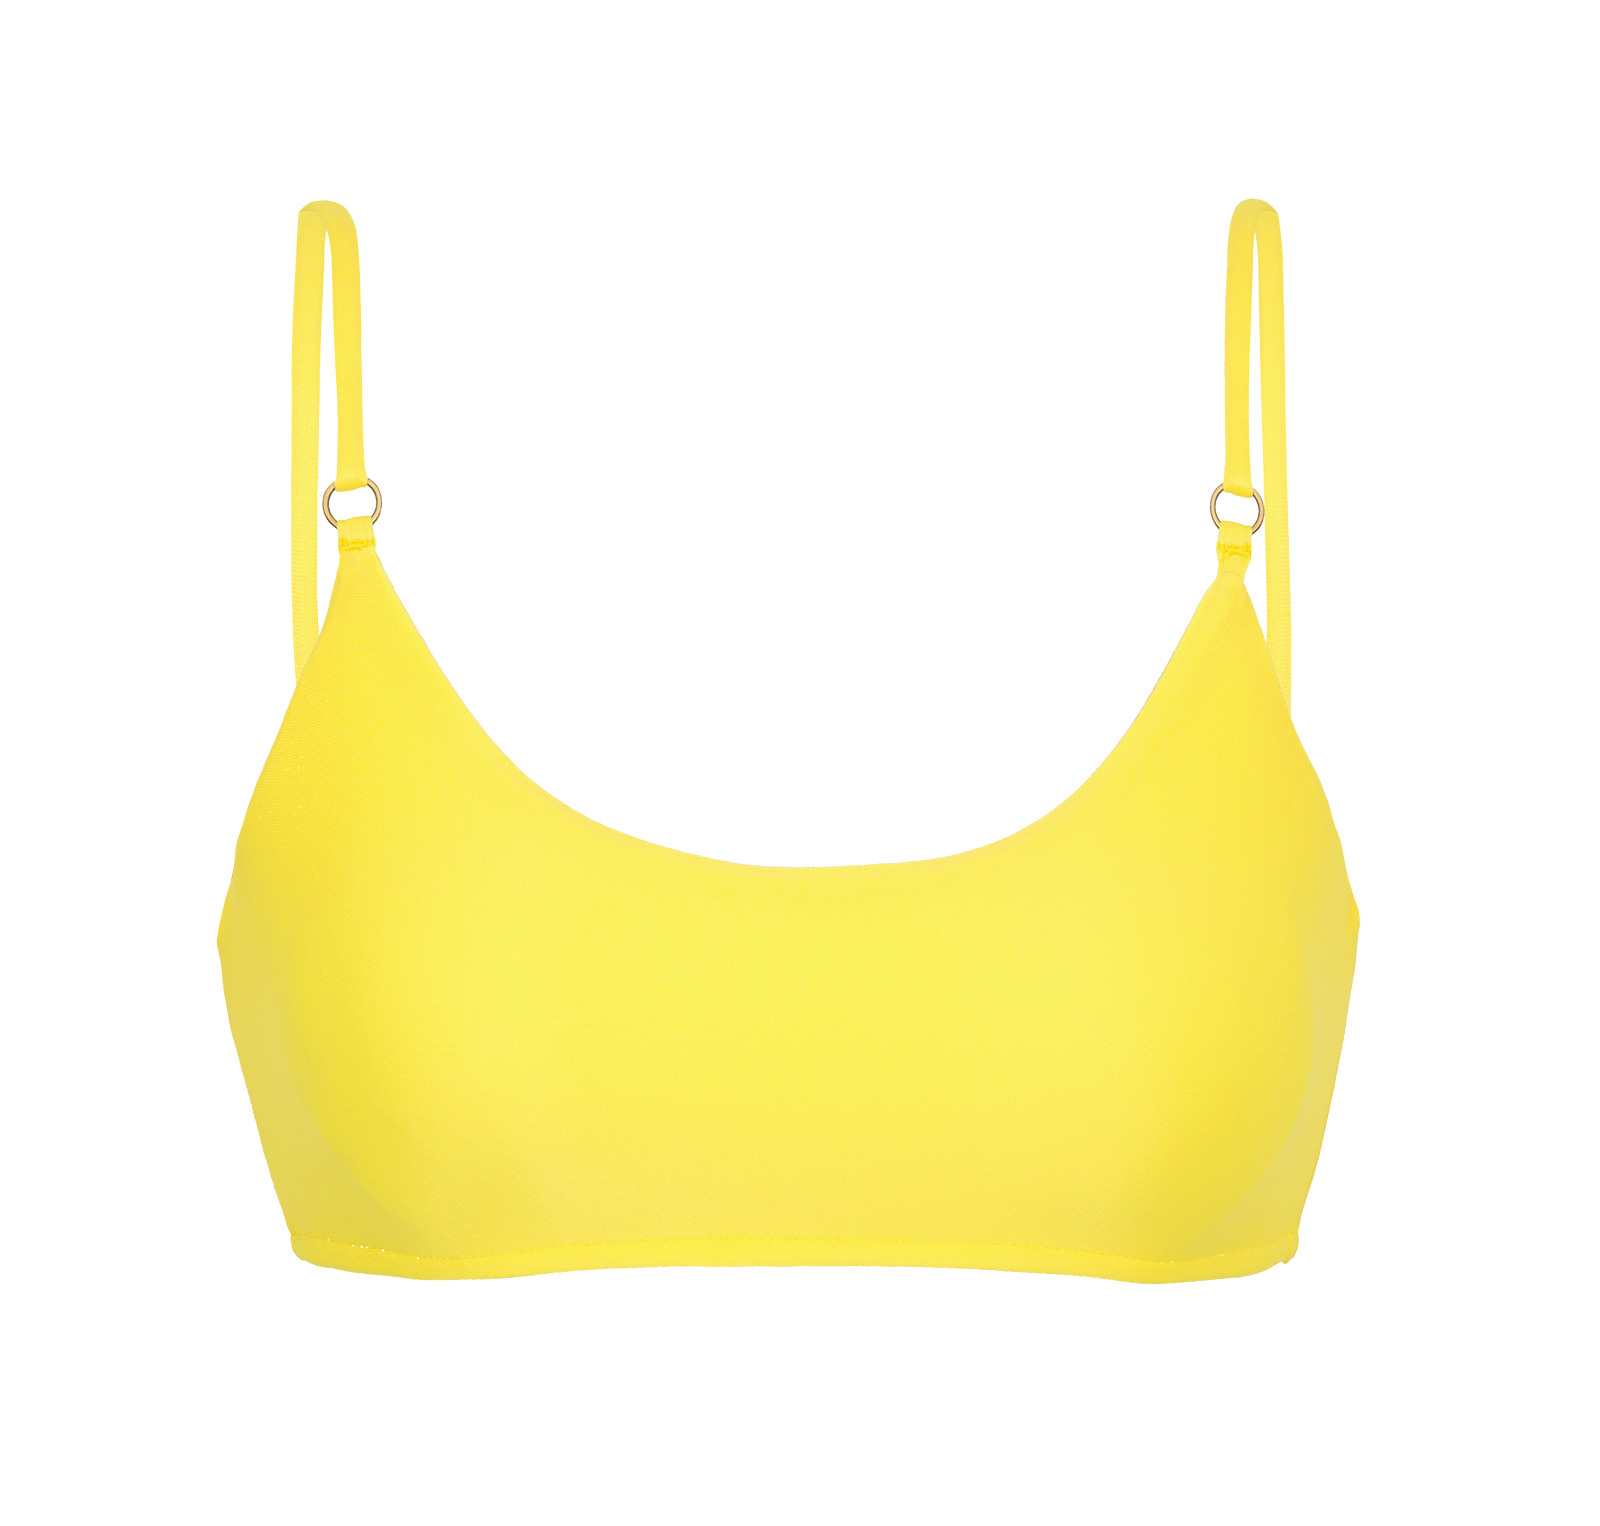 Bikini Tops Lemon Yellow Bra Bikini Top - Top Strega Bra